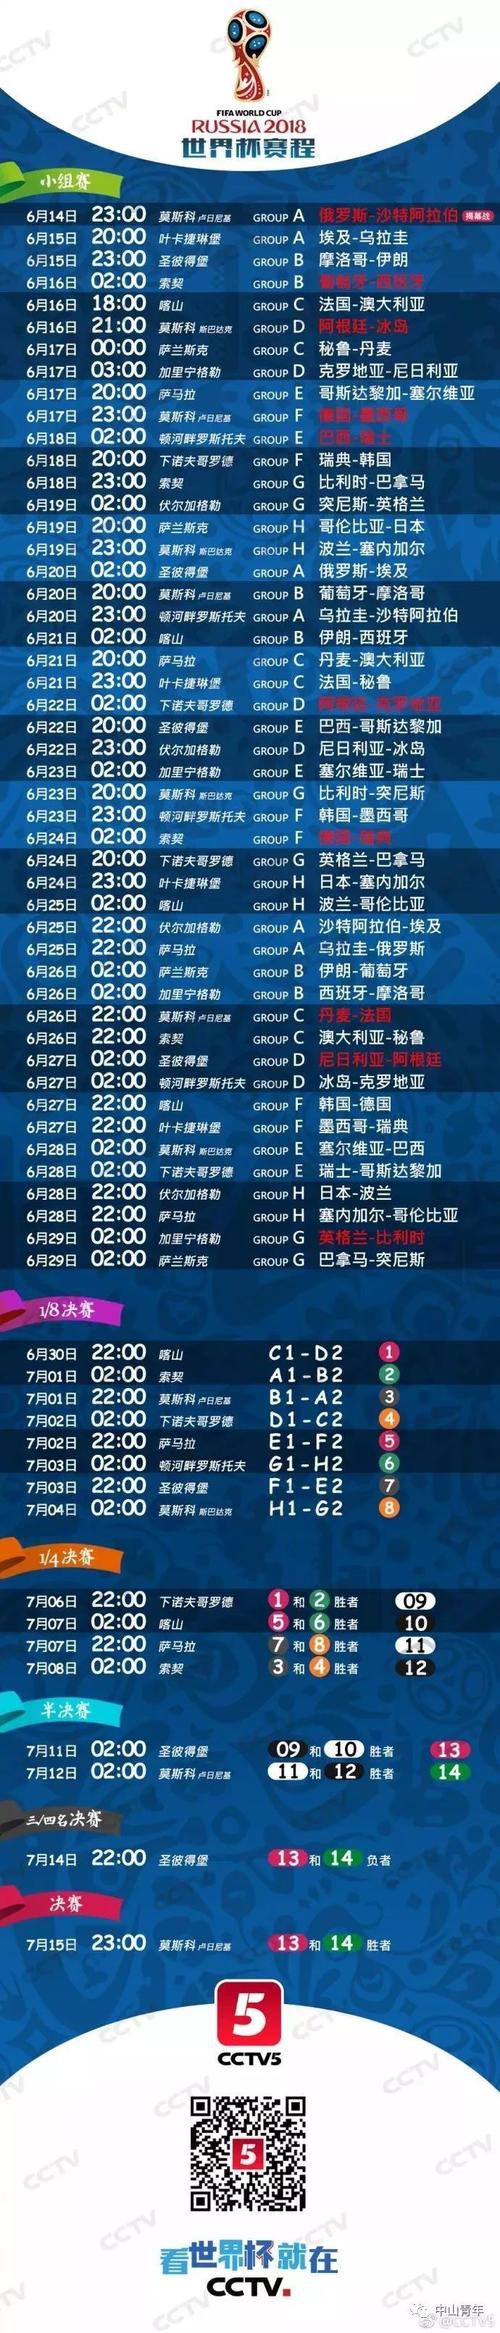 下届世界杯赛程时间表